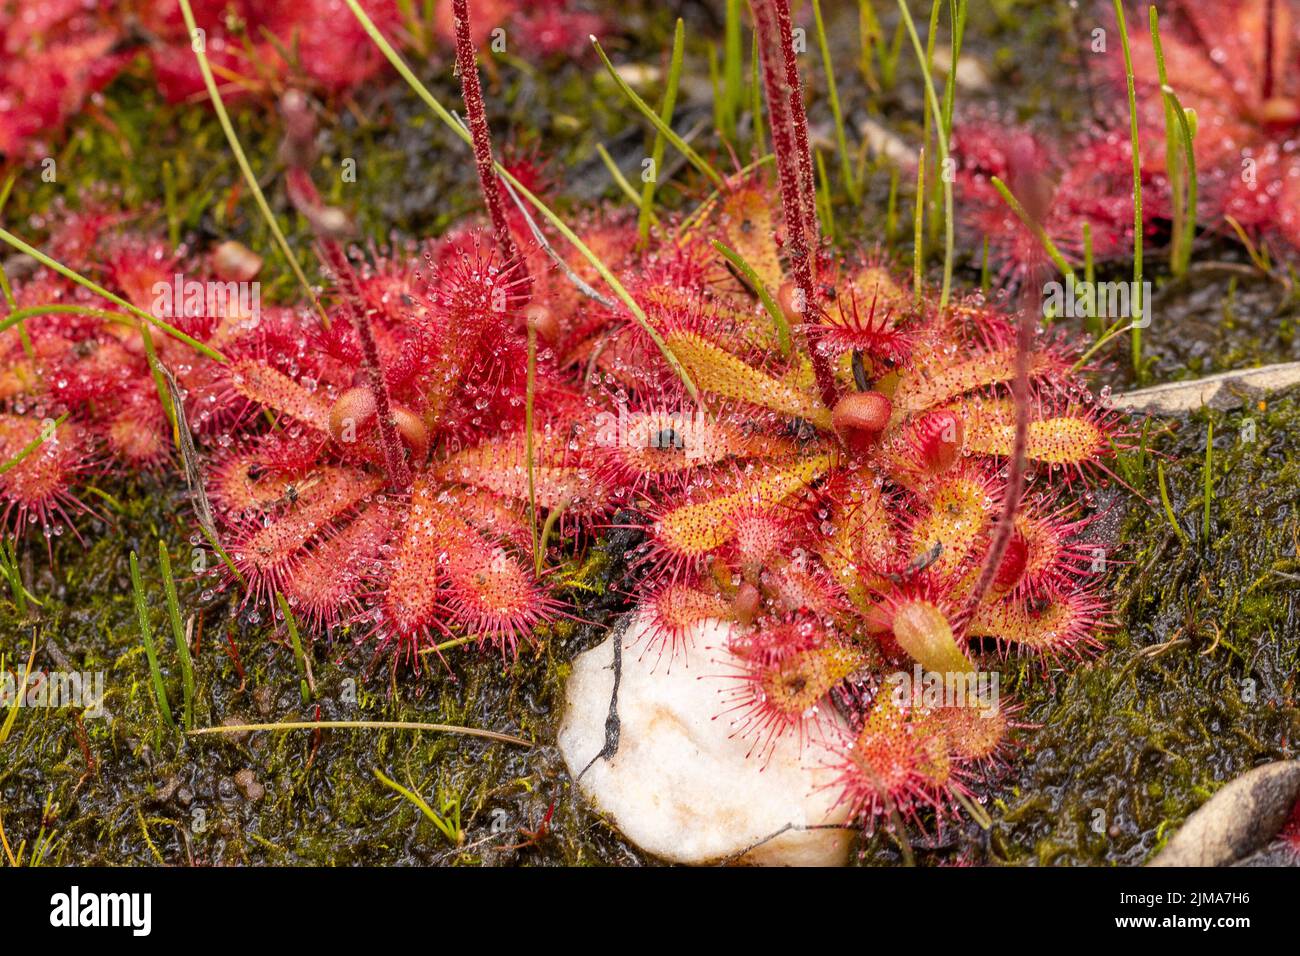 Primo piano di una specie di rugiada rosetta rossa (Drosera sp.) catturata nell'habitat naturale dell'altopiano di Bokkeveld, nel Capo settentrionale del Sudafrica Foto Stock